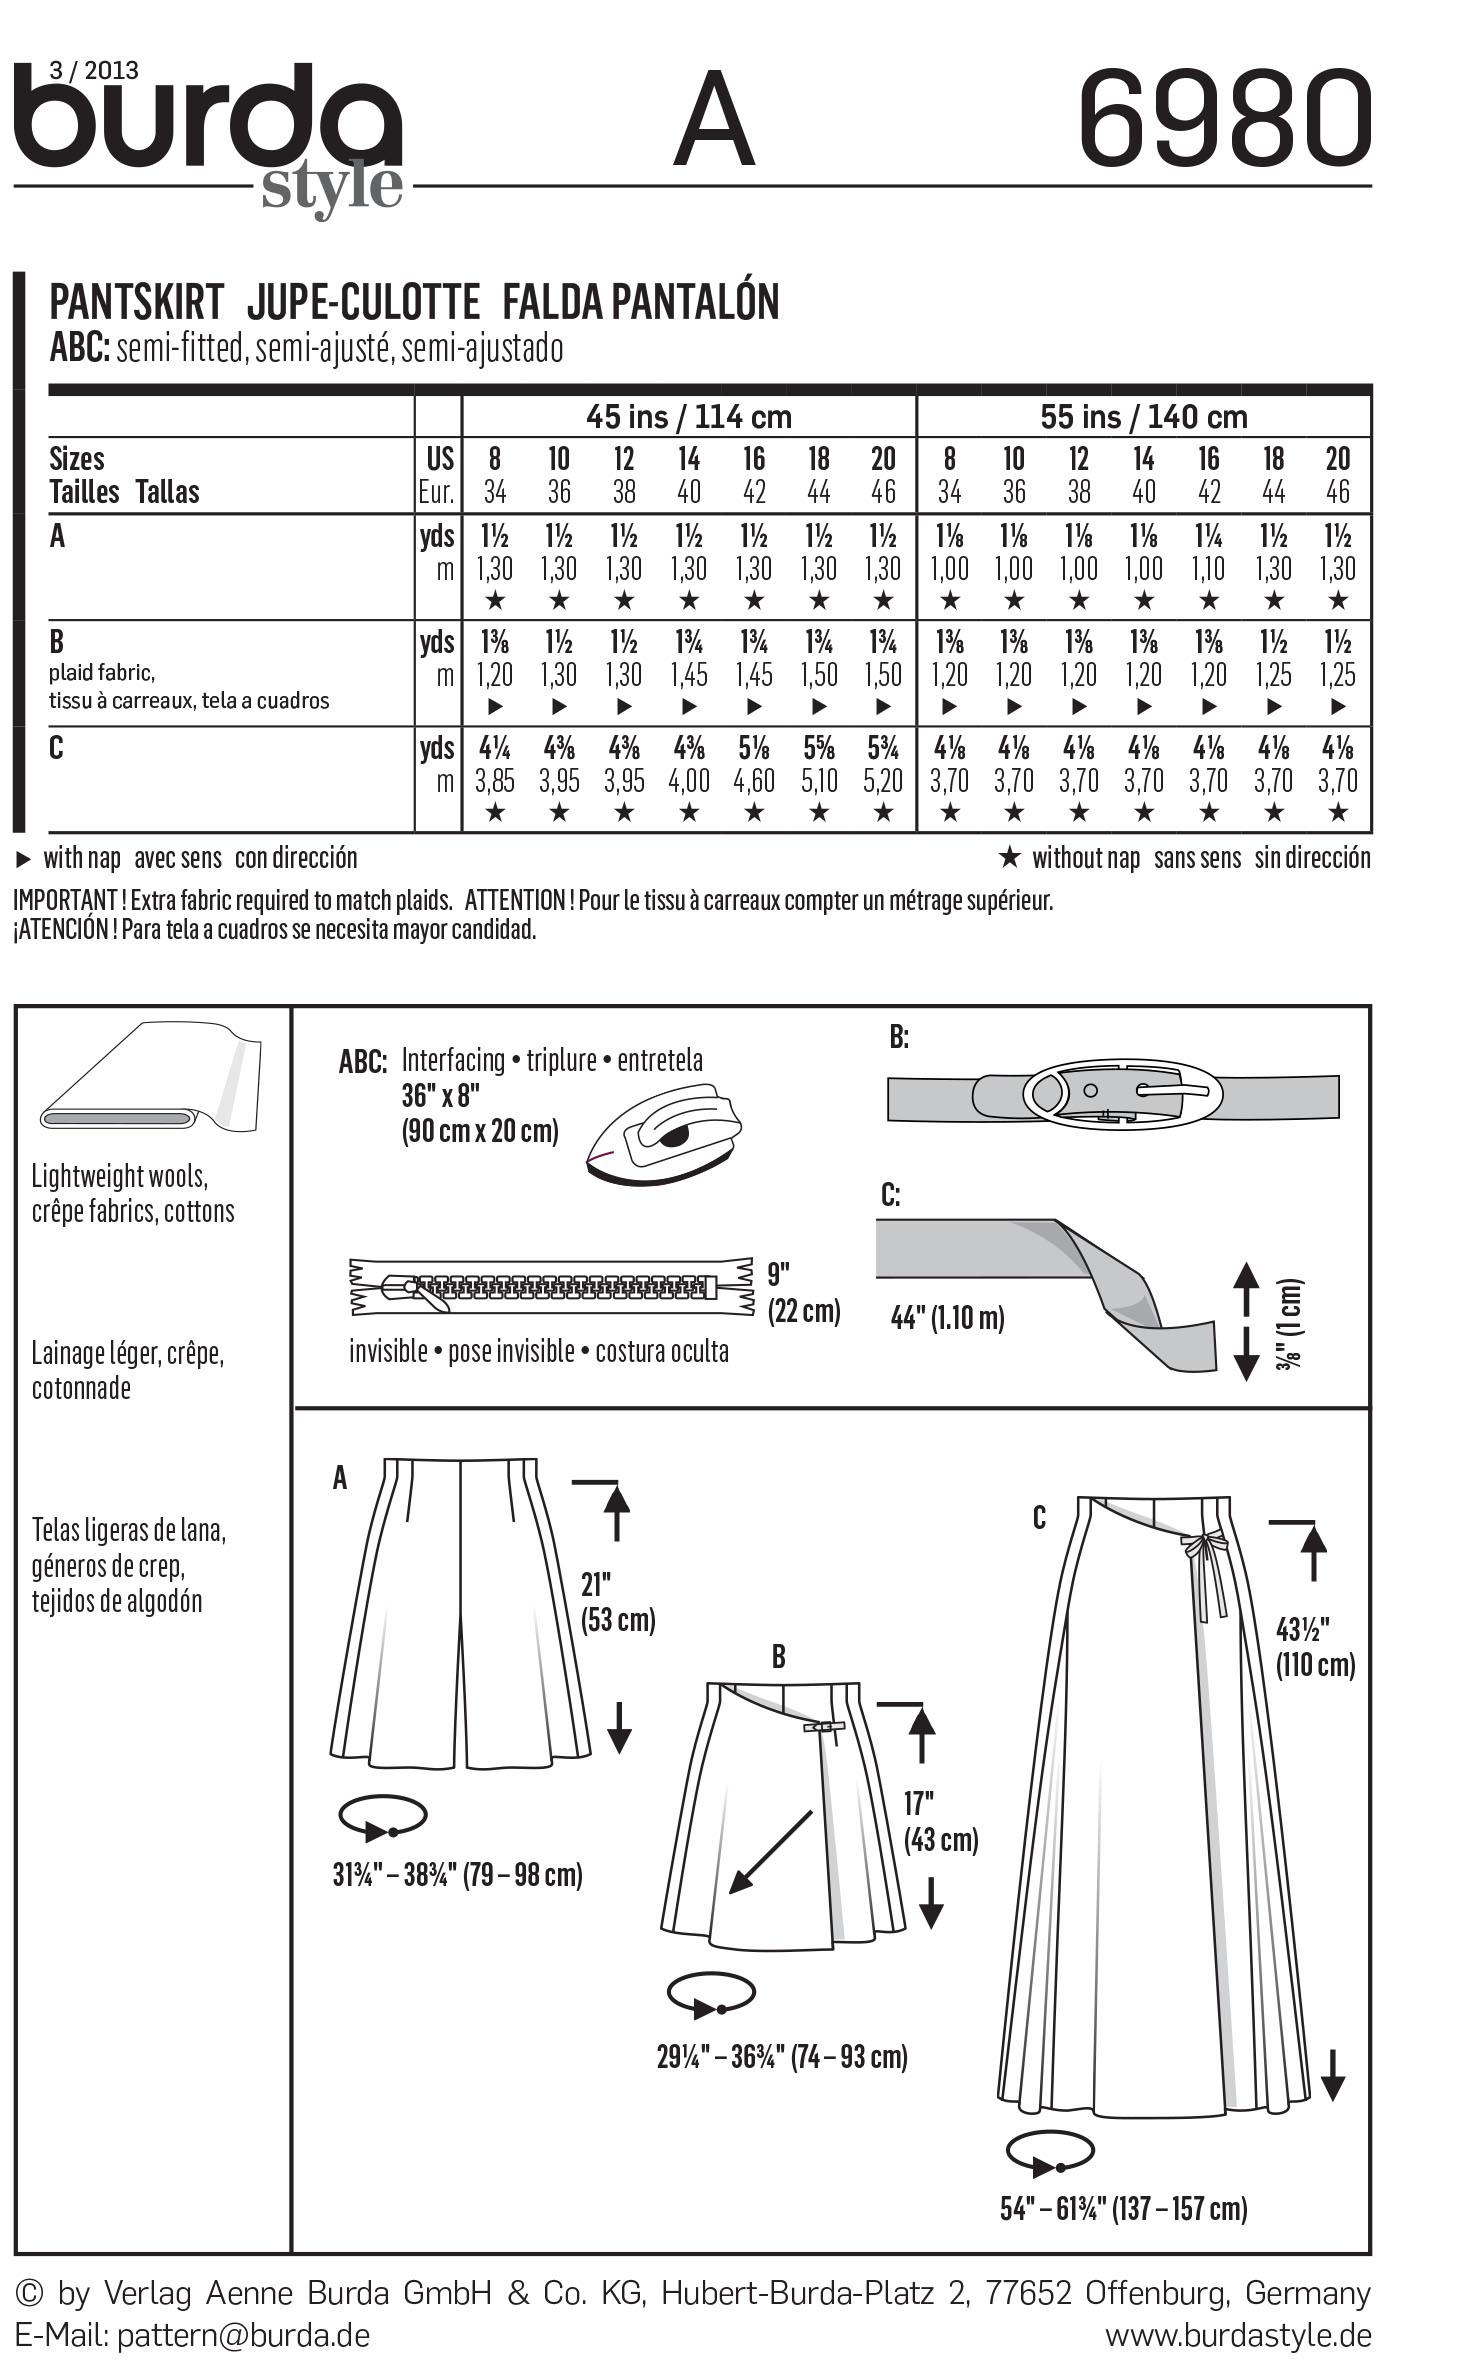 Burda B6980 Burda Trouserskirts Sewing Pattern